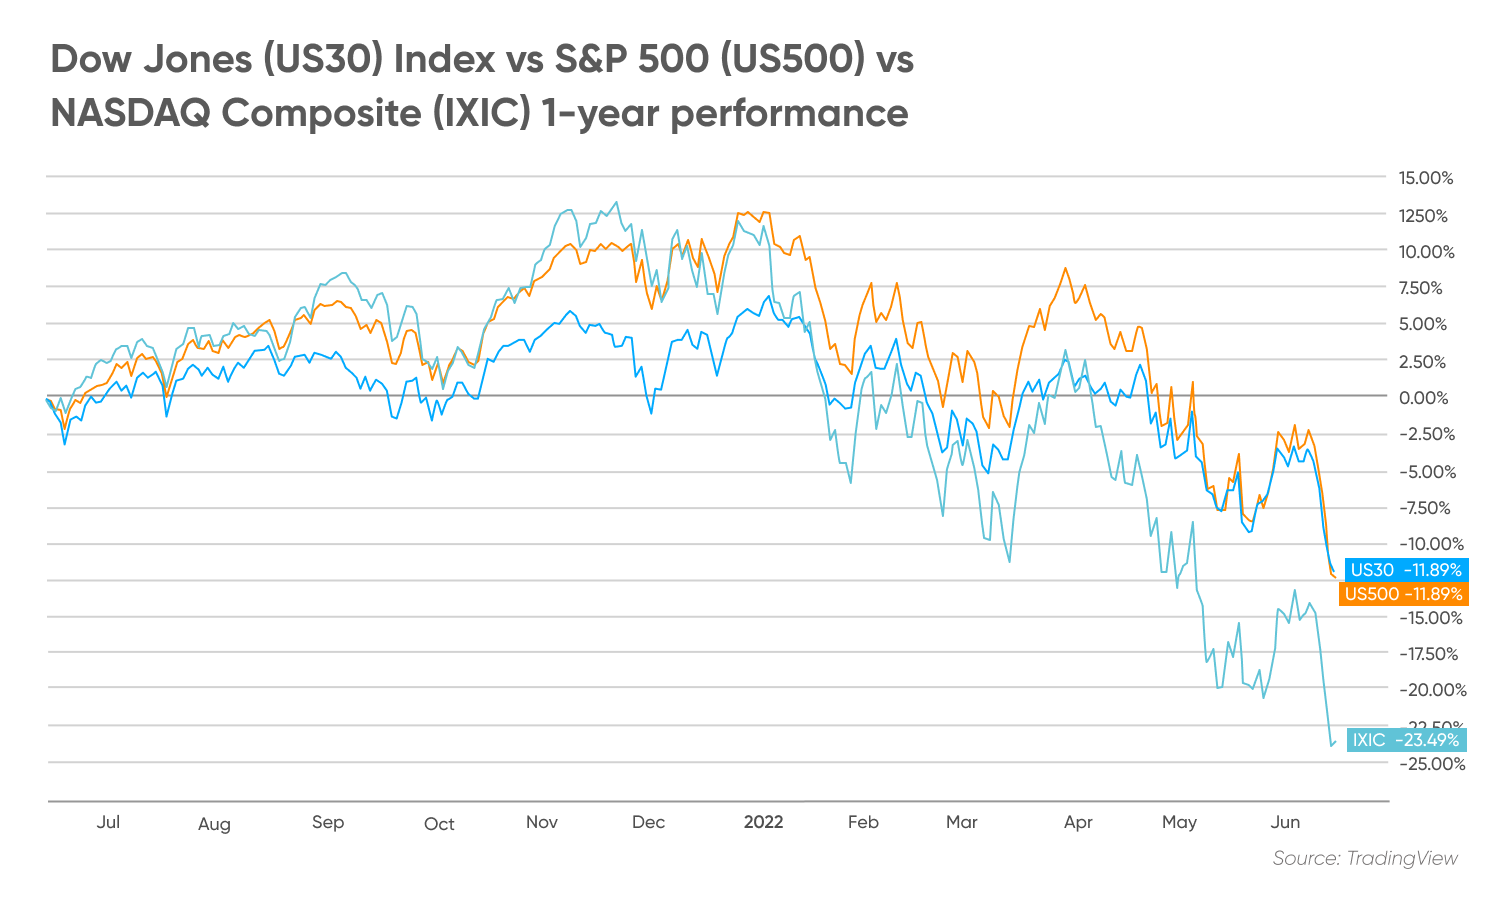 Dow Jones (US30) Index vs S&P 500 (US500) vs NASDAQ Composite (IXIC)